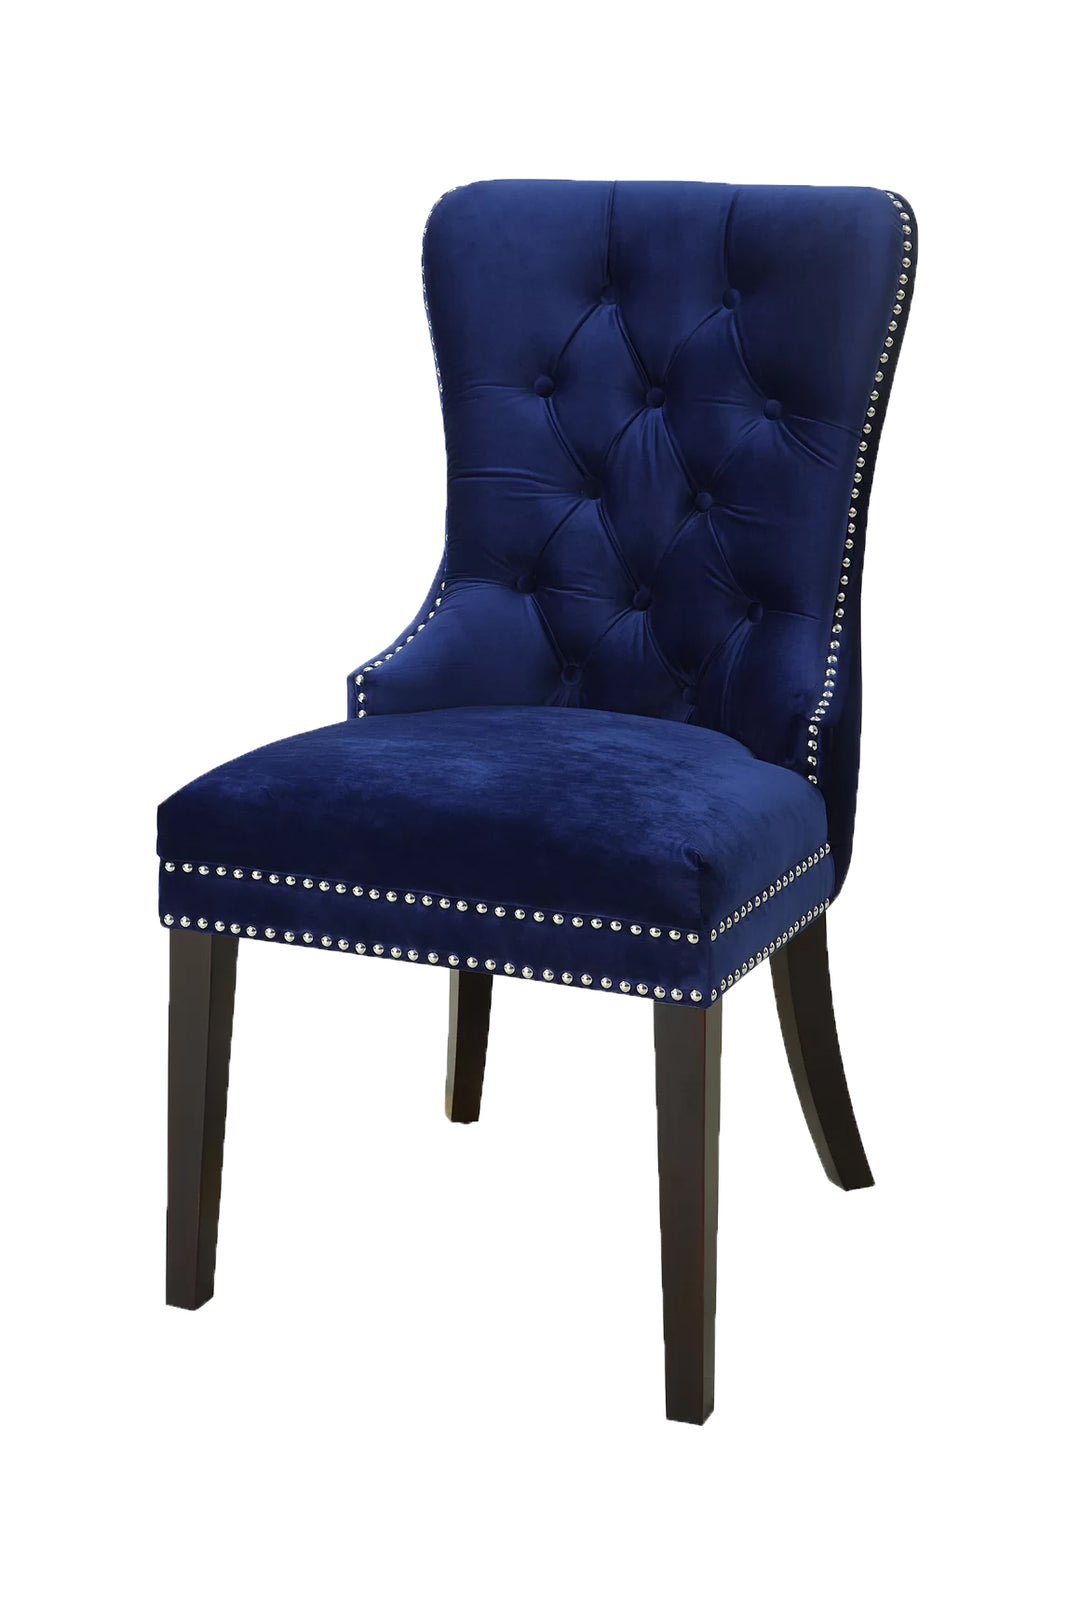 Blue Velvet Chair - Tufted - 2 Piece Set HI-LINE GIFT LTD.